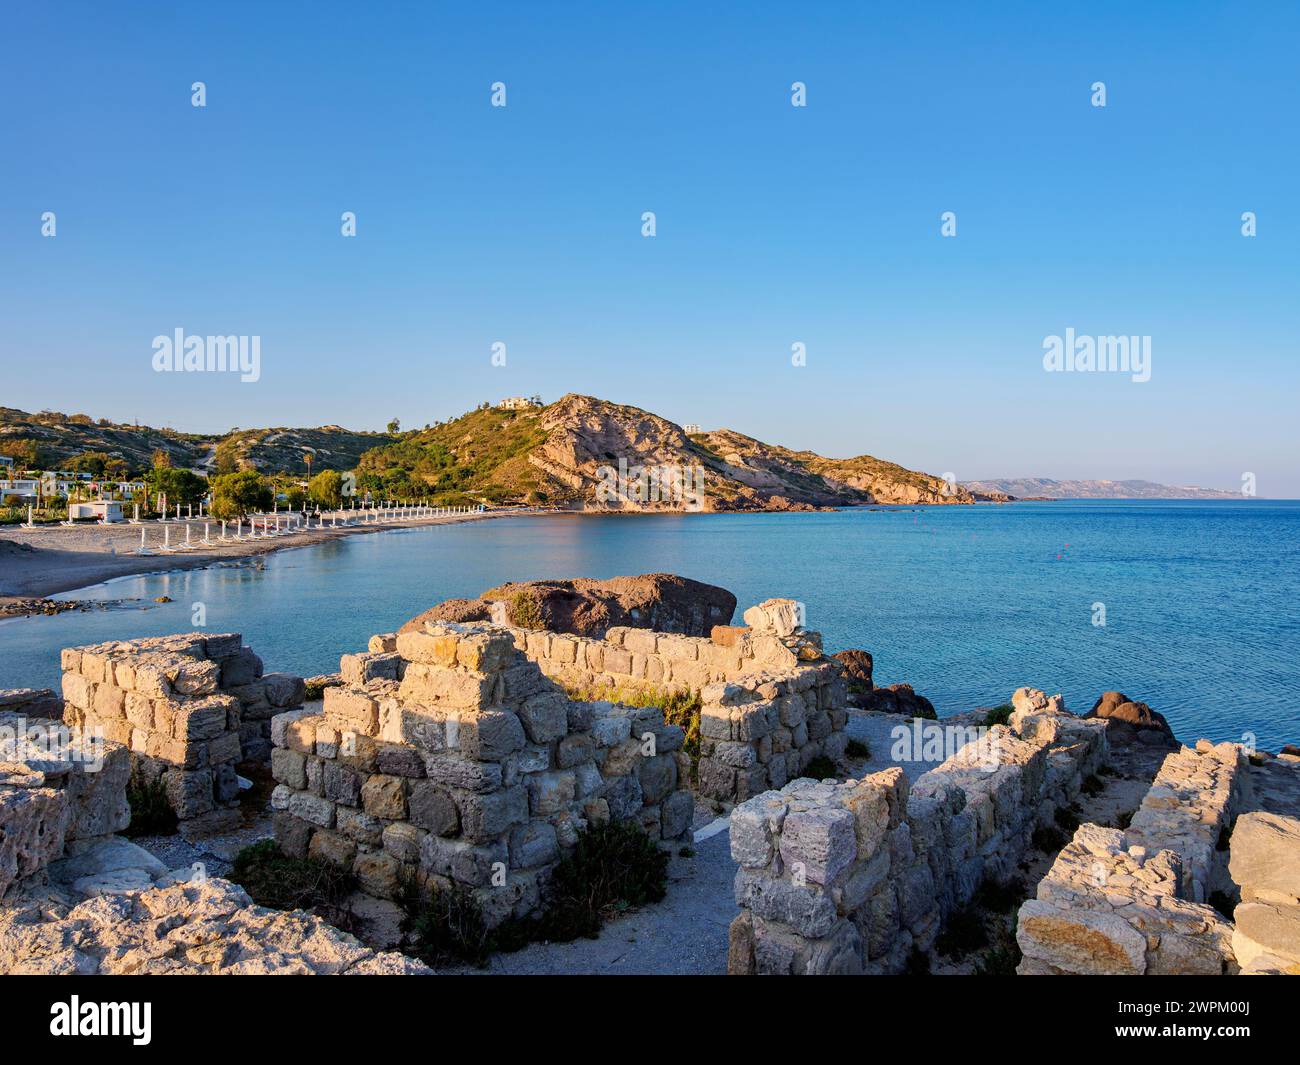 St Rovine della basilica di Stefanos al tramonto, Spiaggia di Agios Stefanos, isola di Kos, Dodecaneso, isole greche, Grecia, Europa Foto Stock